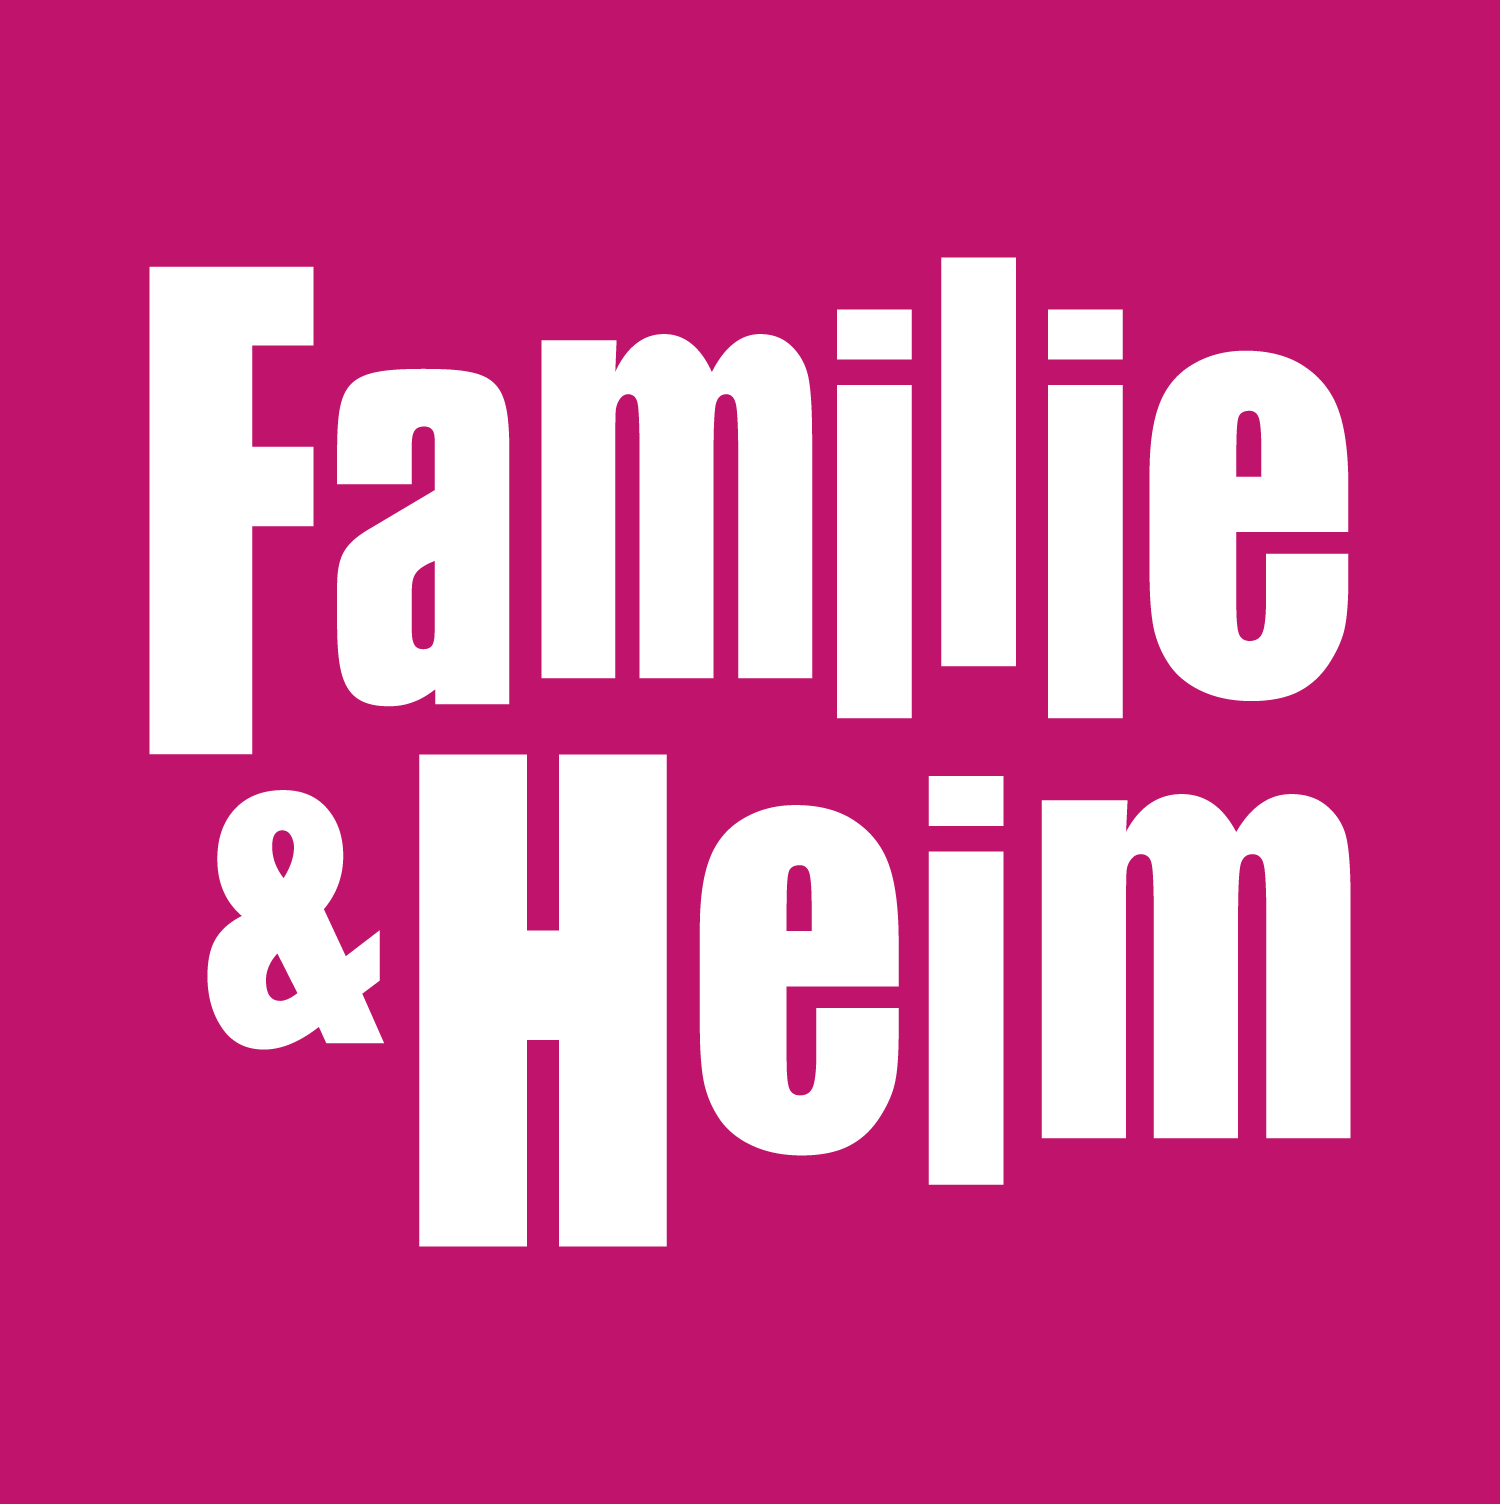 Familie & Heim 2022